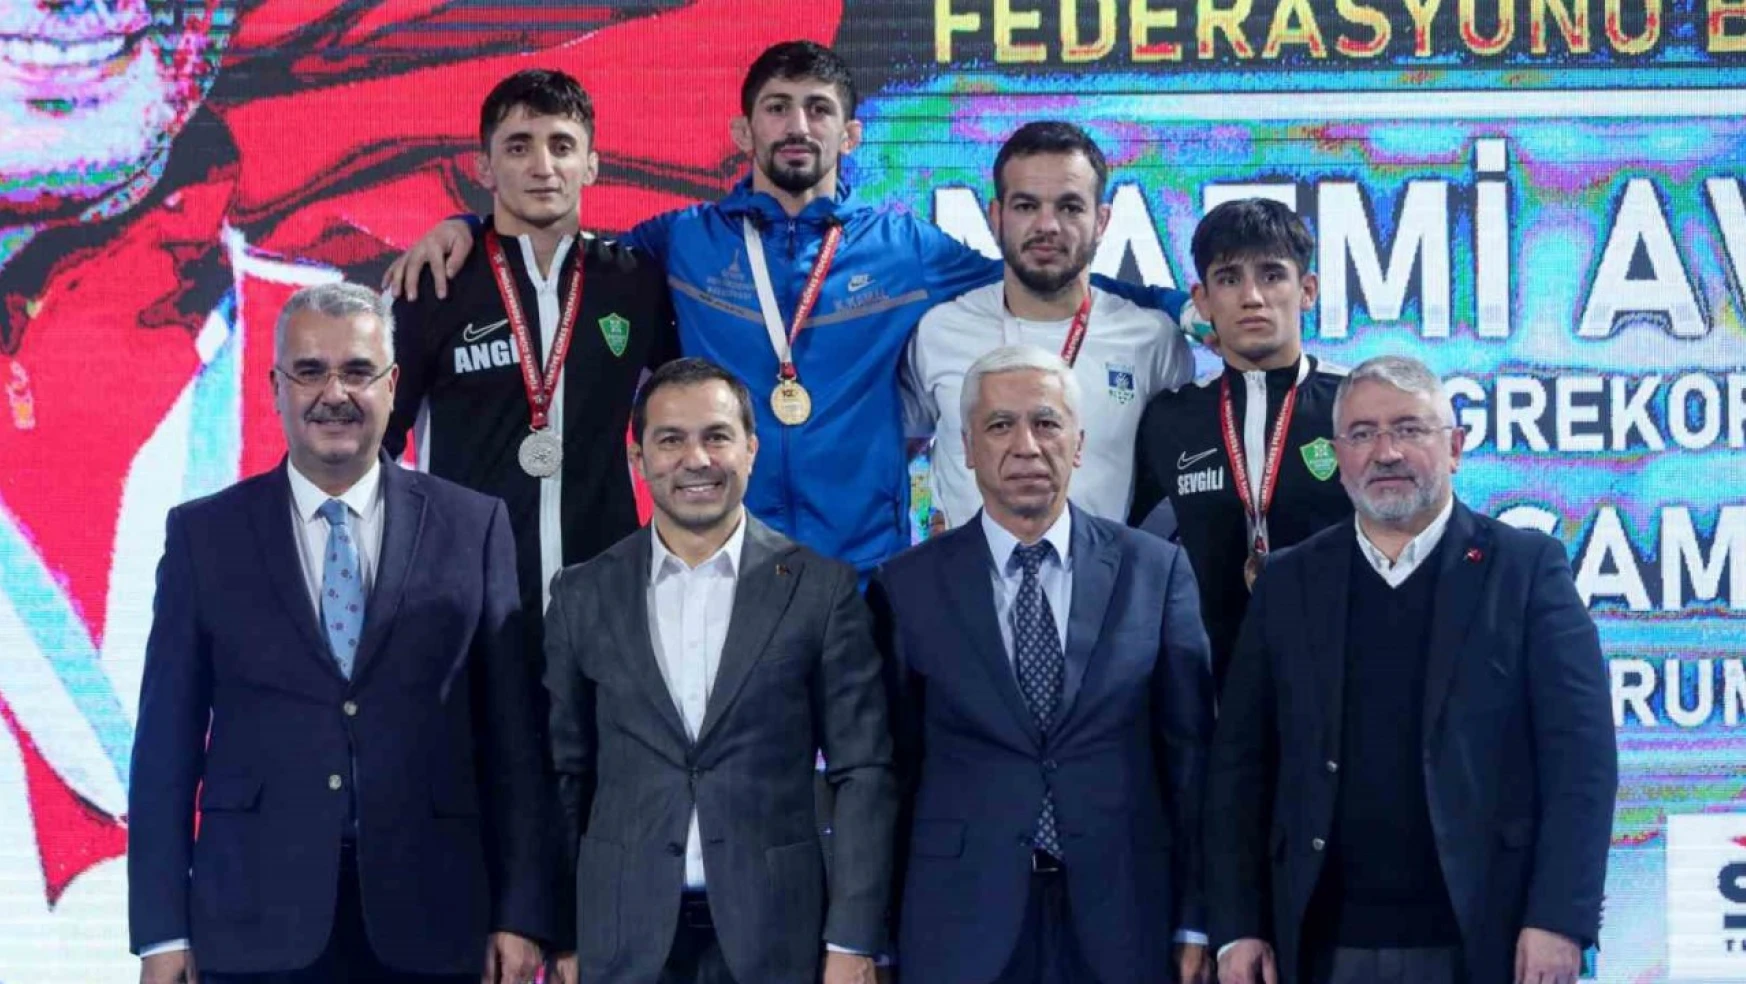 Nazmi Avluca Büyükler Grekoromen Güreş Türkiye Şampiyonası, devam ediyor